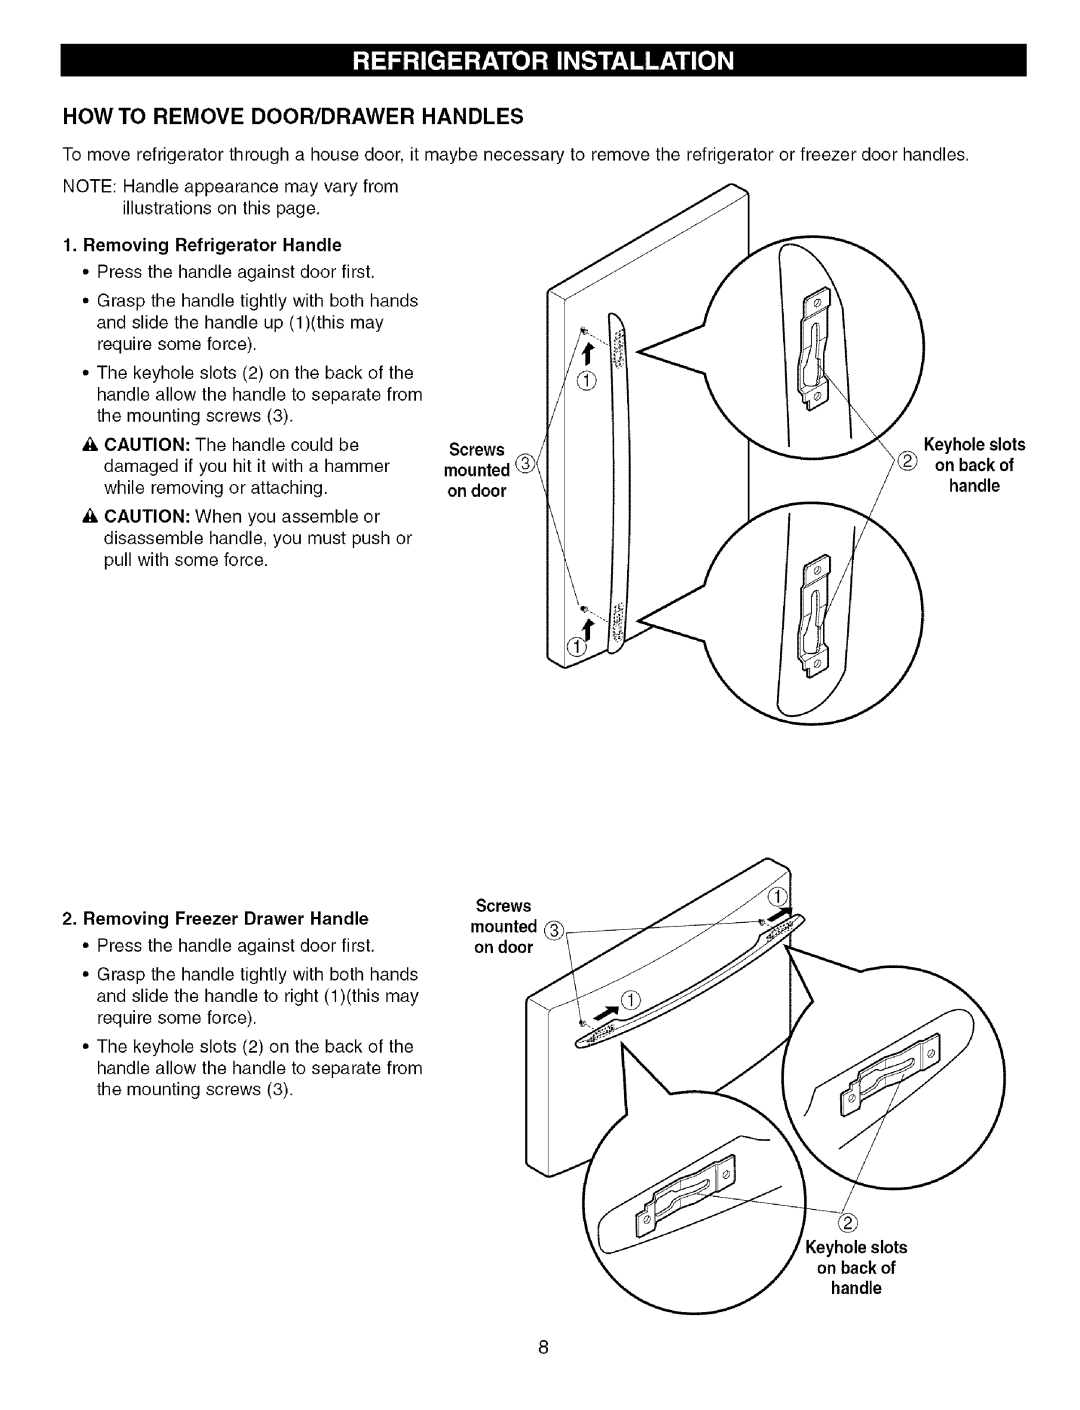 Kenmore 3840JL2019A How To Remove Door/Drawer Handles, Removing Refrigerator Handle, mounted on door, mounted @I on door 